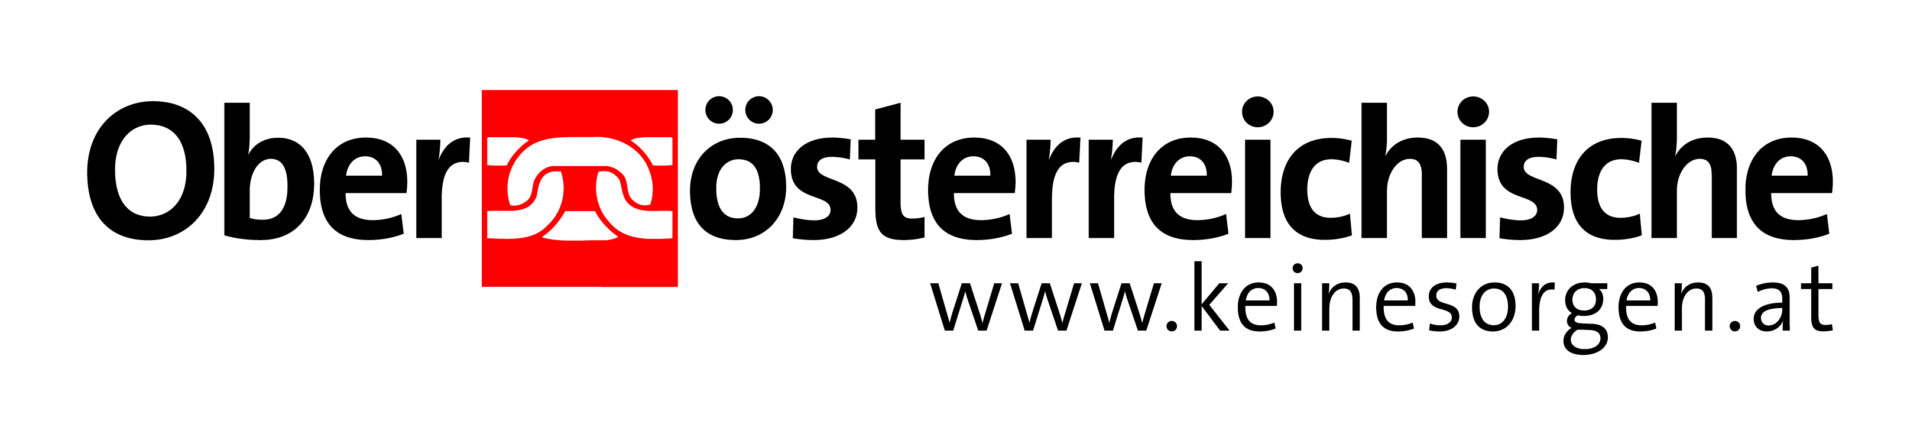 Logo Oberösterreichische Versicherung AG